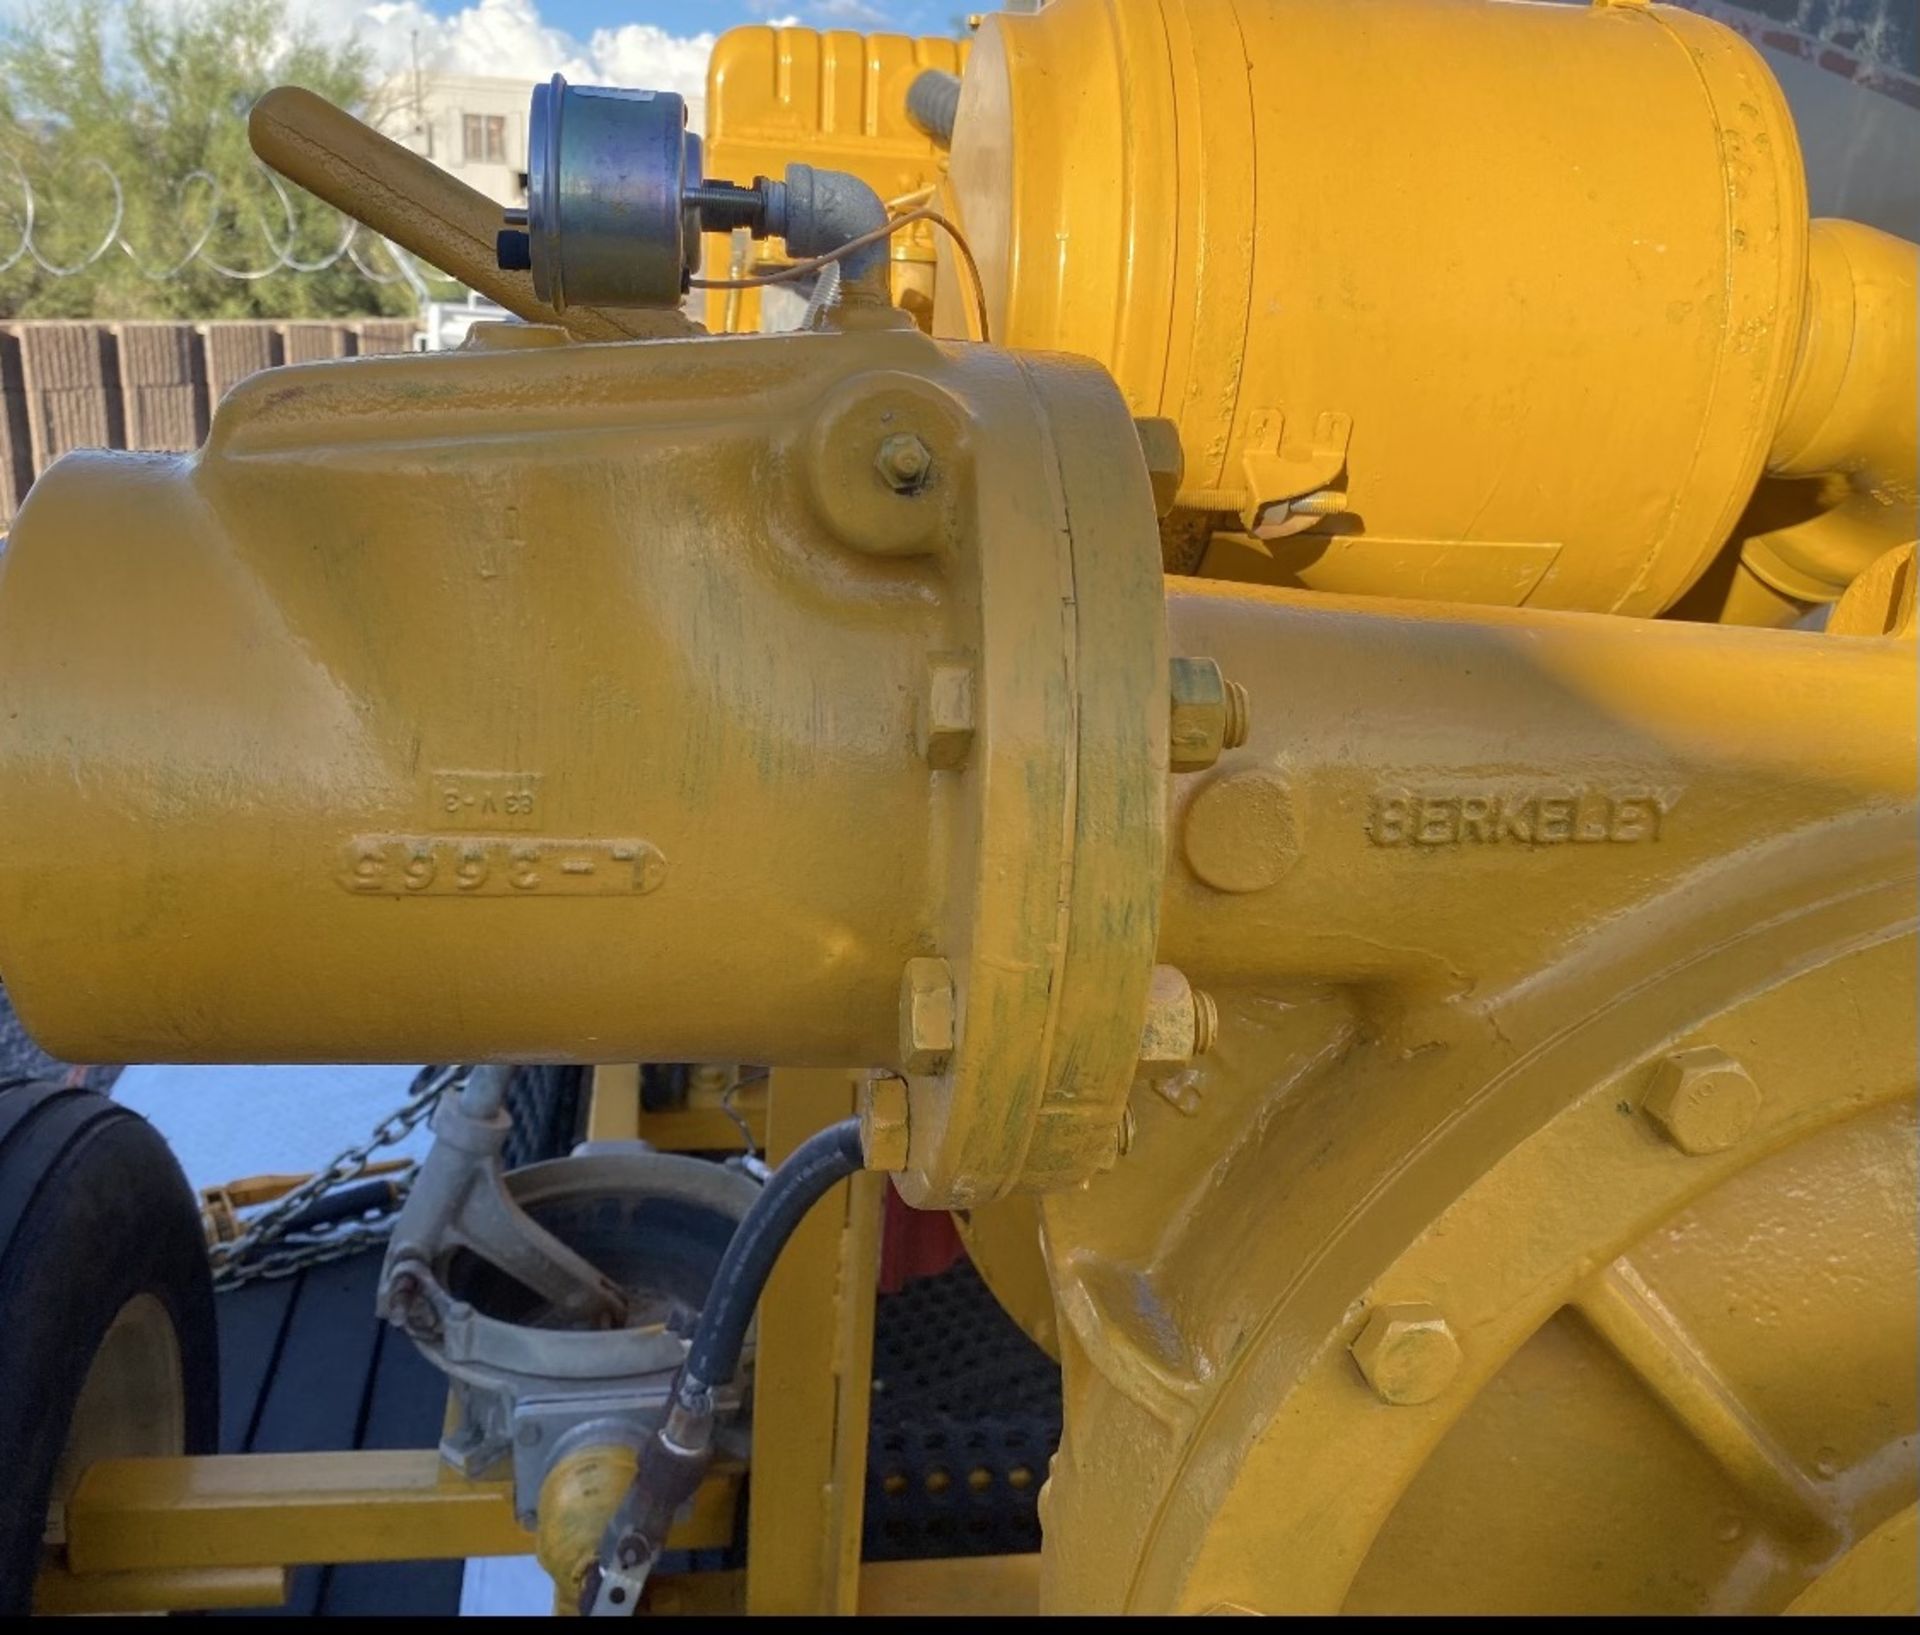 Used 6" Berkeley Water Pump Powered by Caterpillar 150 HP Diesel Engine. Model 3116 - Image 22 of 22